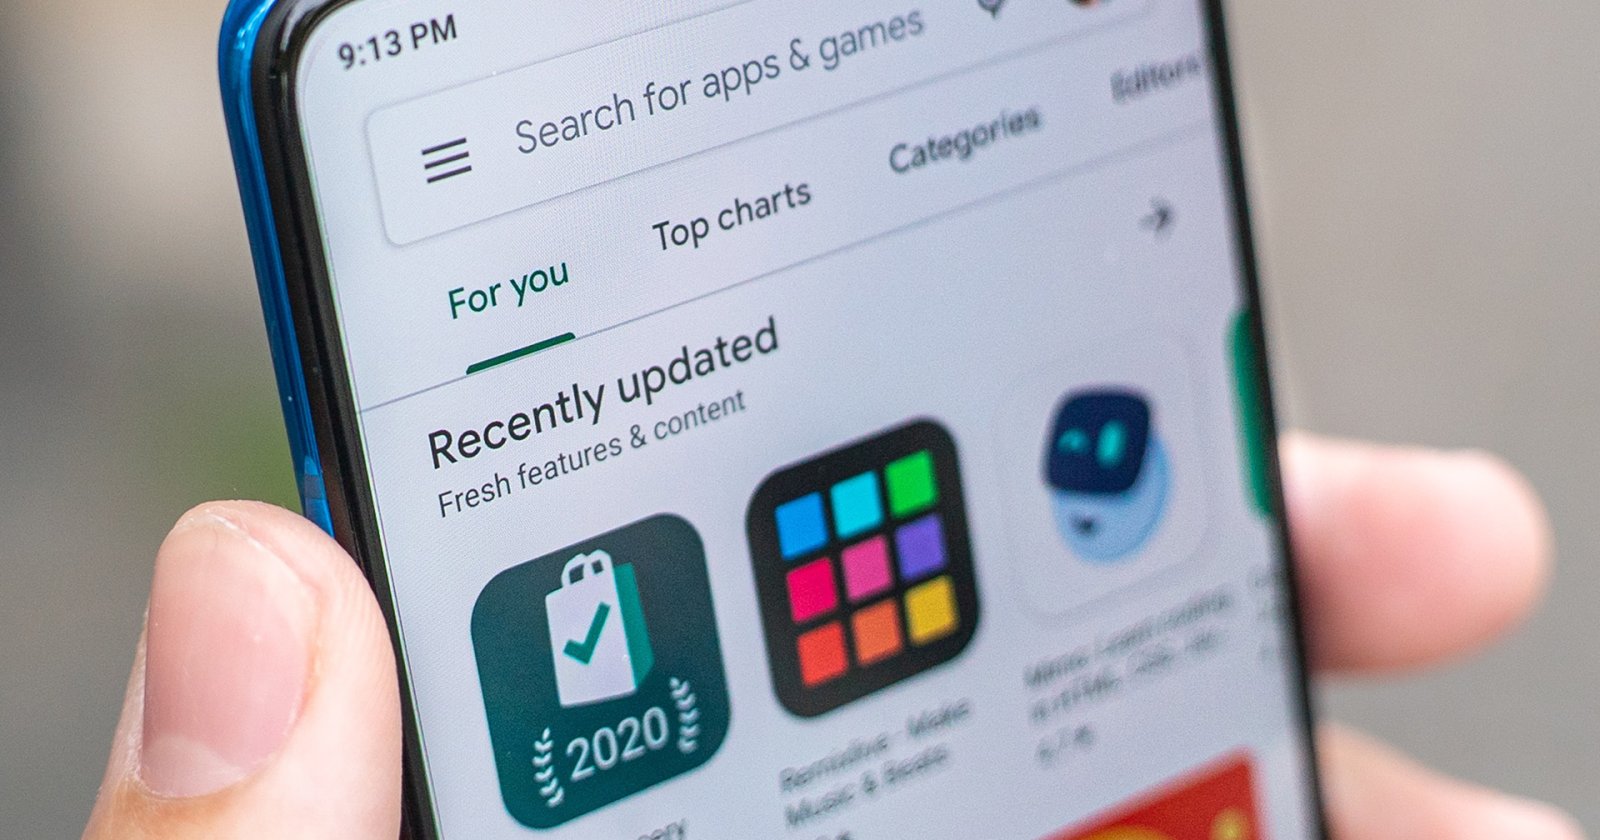 Google Play Store อนุญาตให้ผู้ใช้ ‘ถอนการติดตั้งแอป’ จากทางไกลผ่านอุปกรณ์อื่นได้